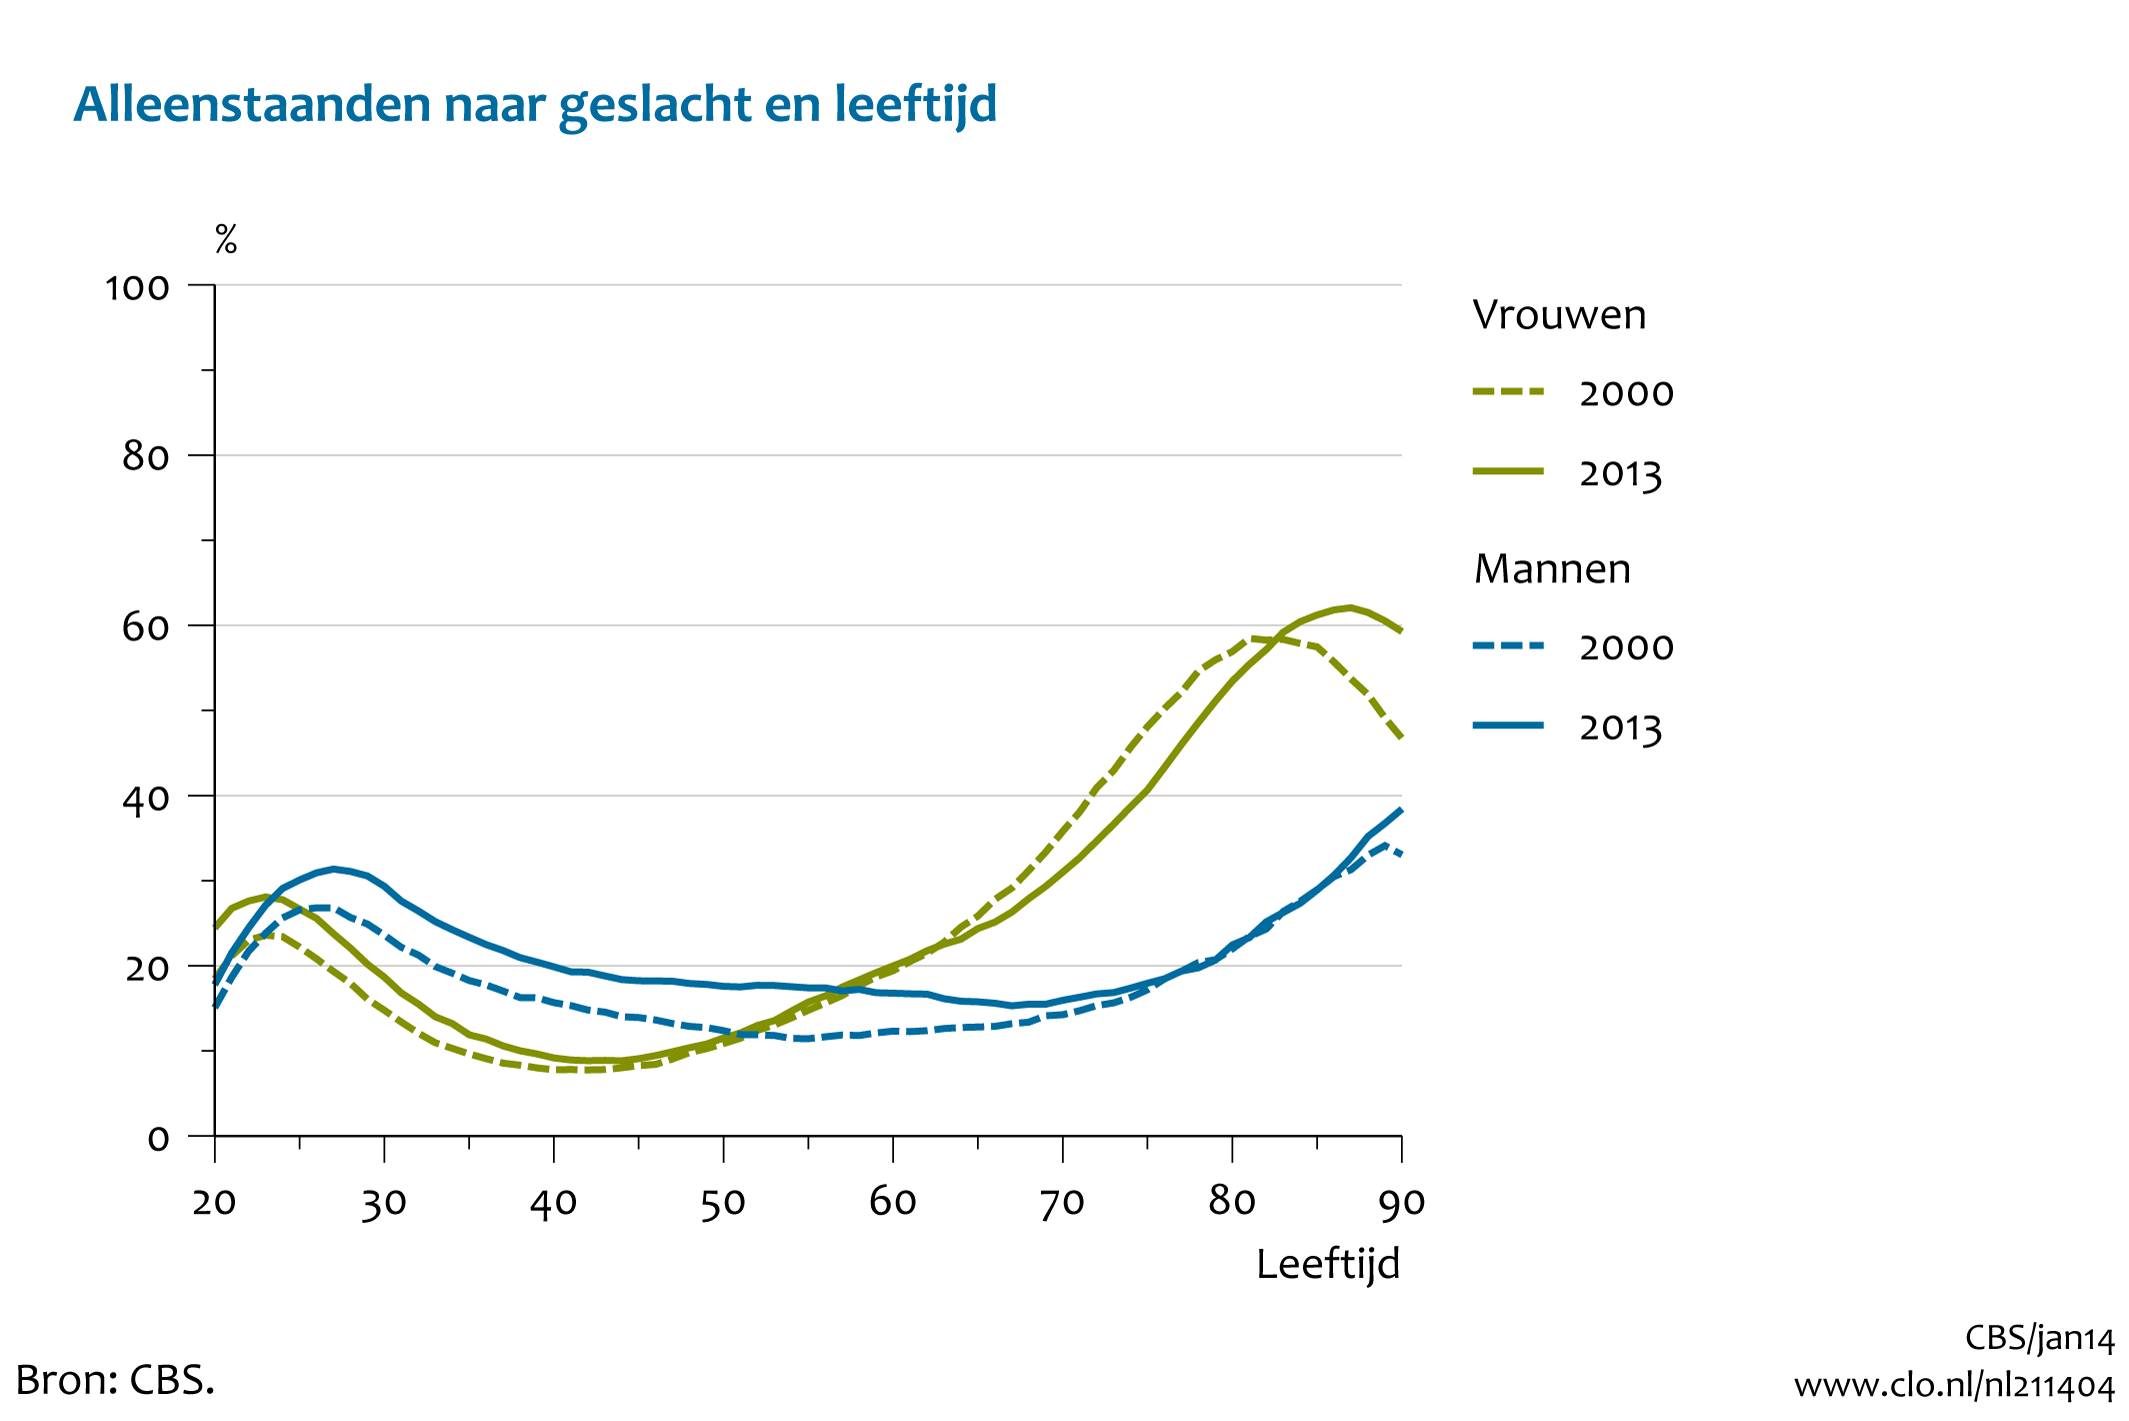 Figuur  Alleenstaanden naar geslacht en leeftijd, 2000 en 2013. In de rest van de tekst wordt deze figuur uitgebreider uitgelegd.